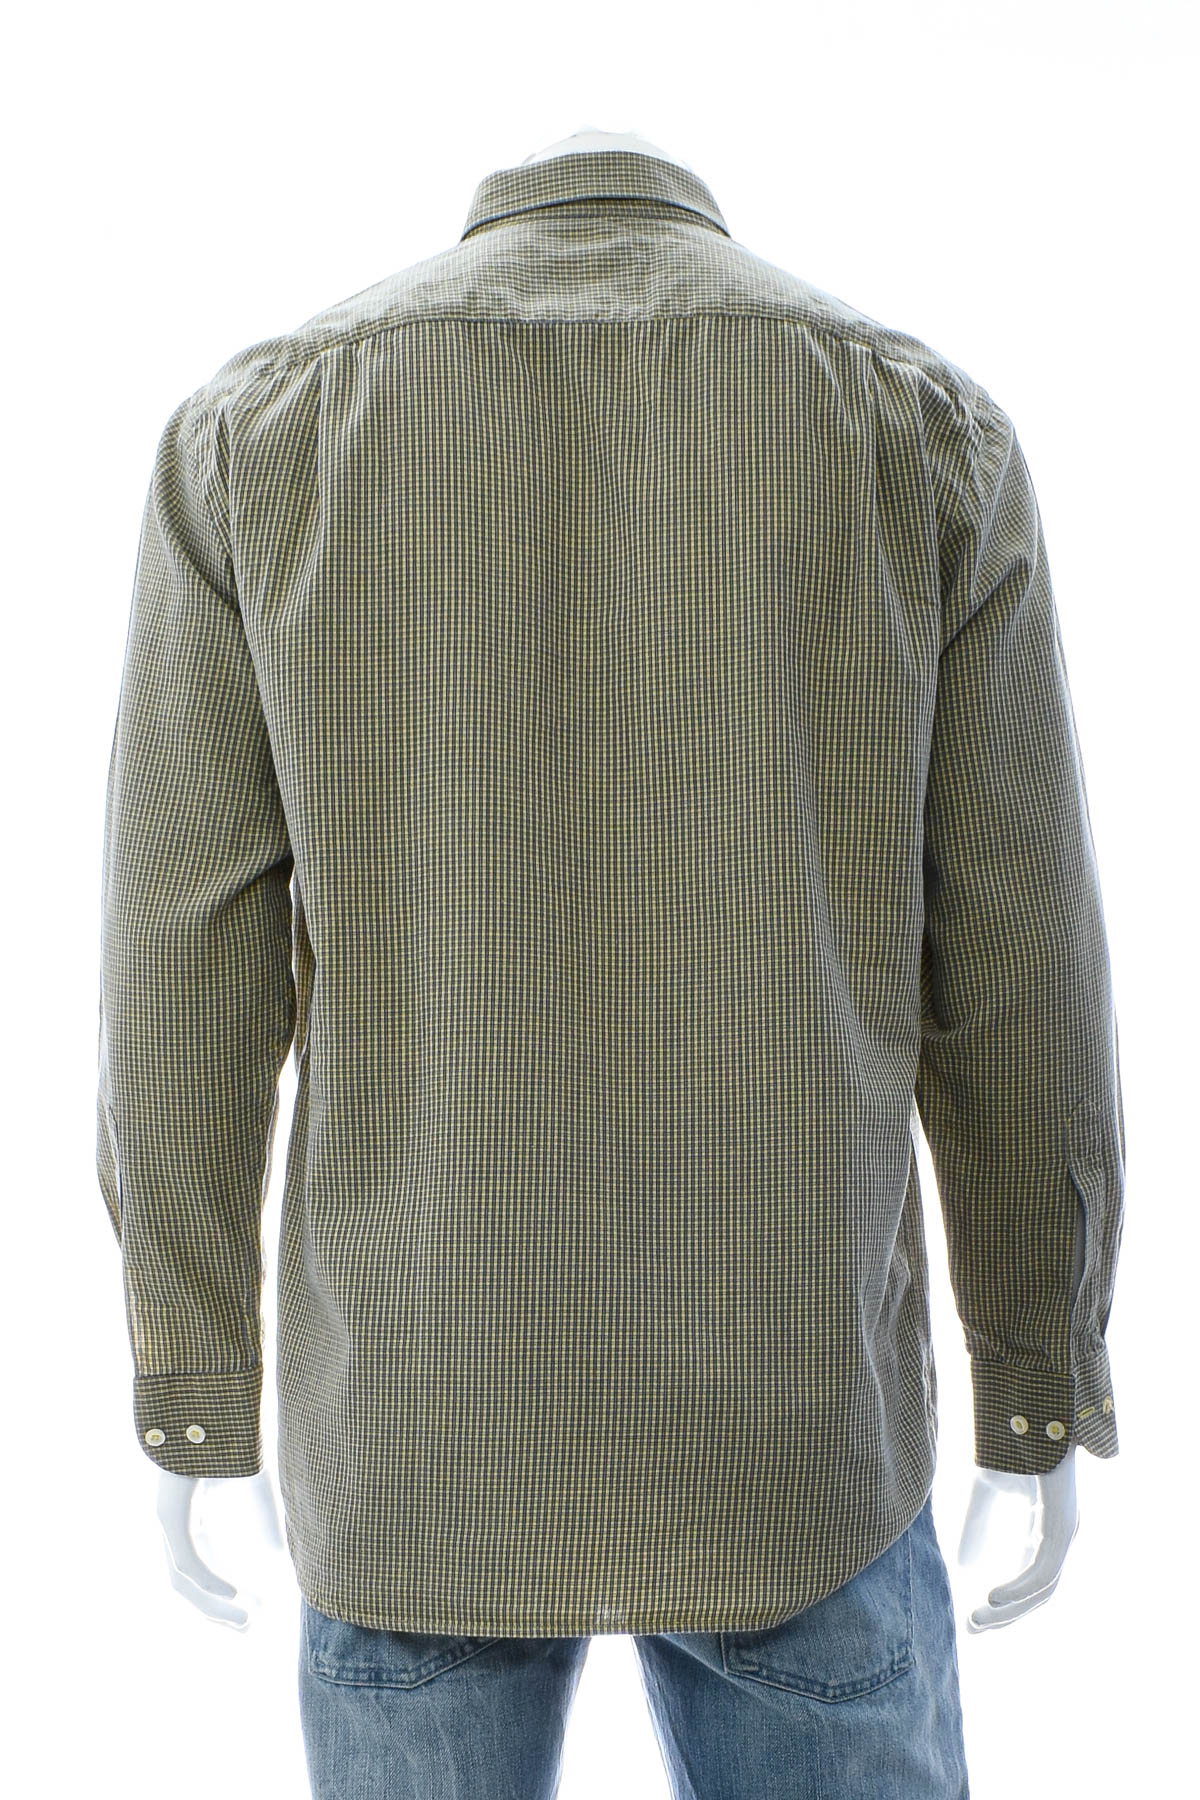 Men's shirt - Einhorn - 1